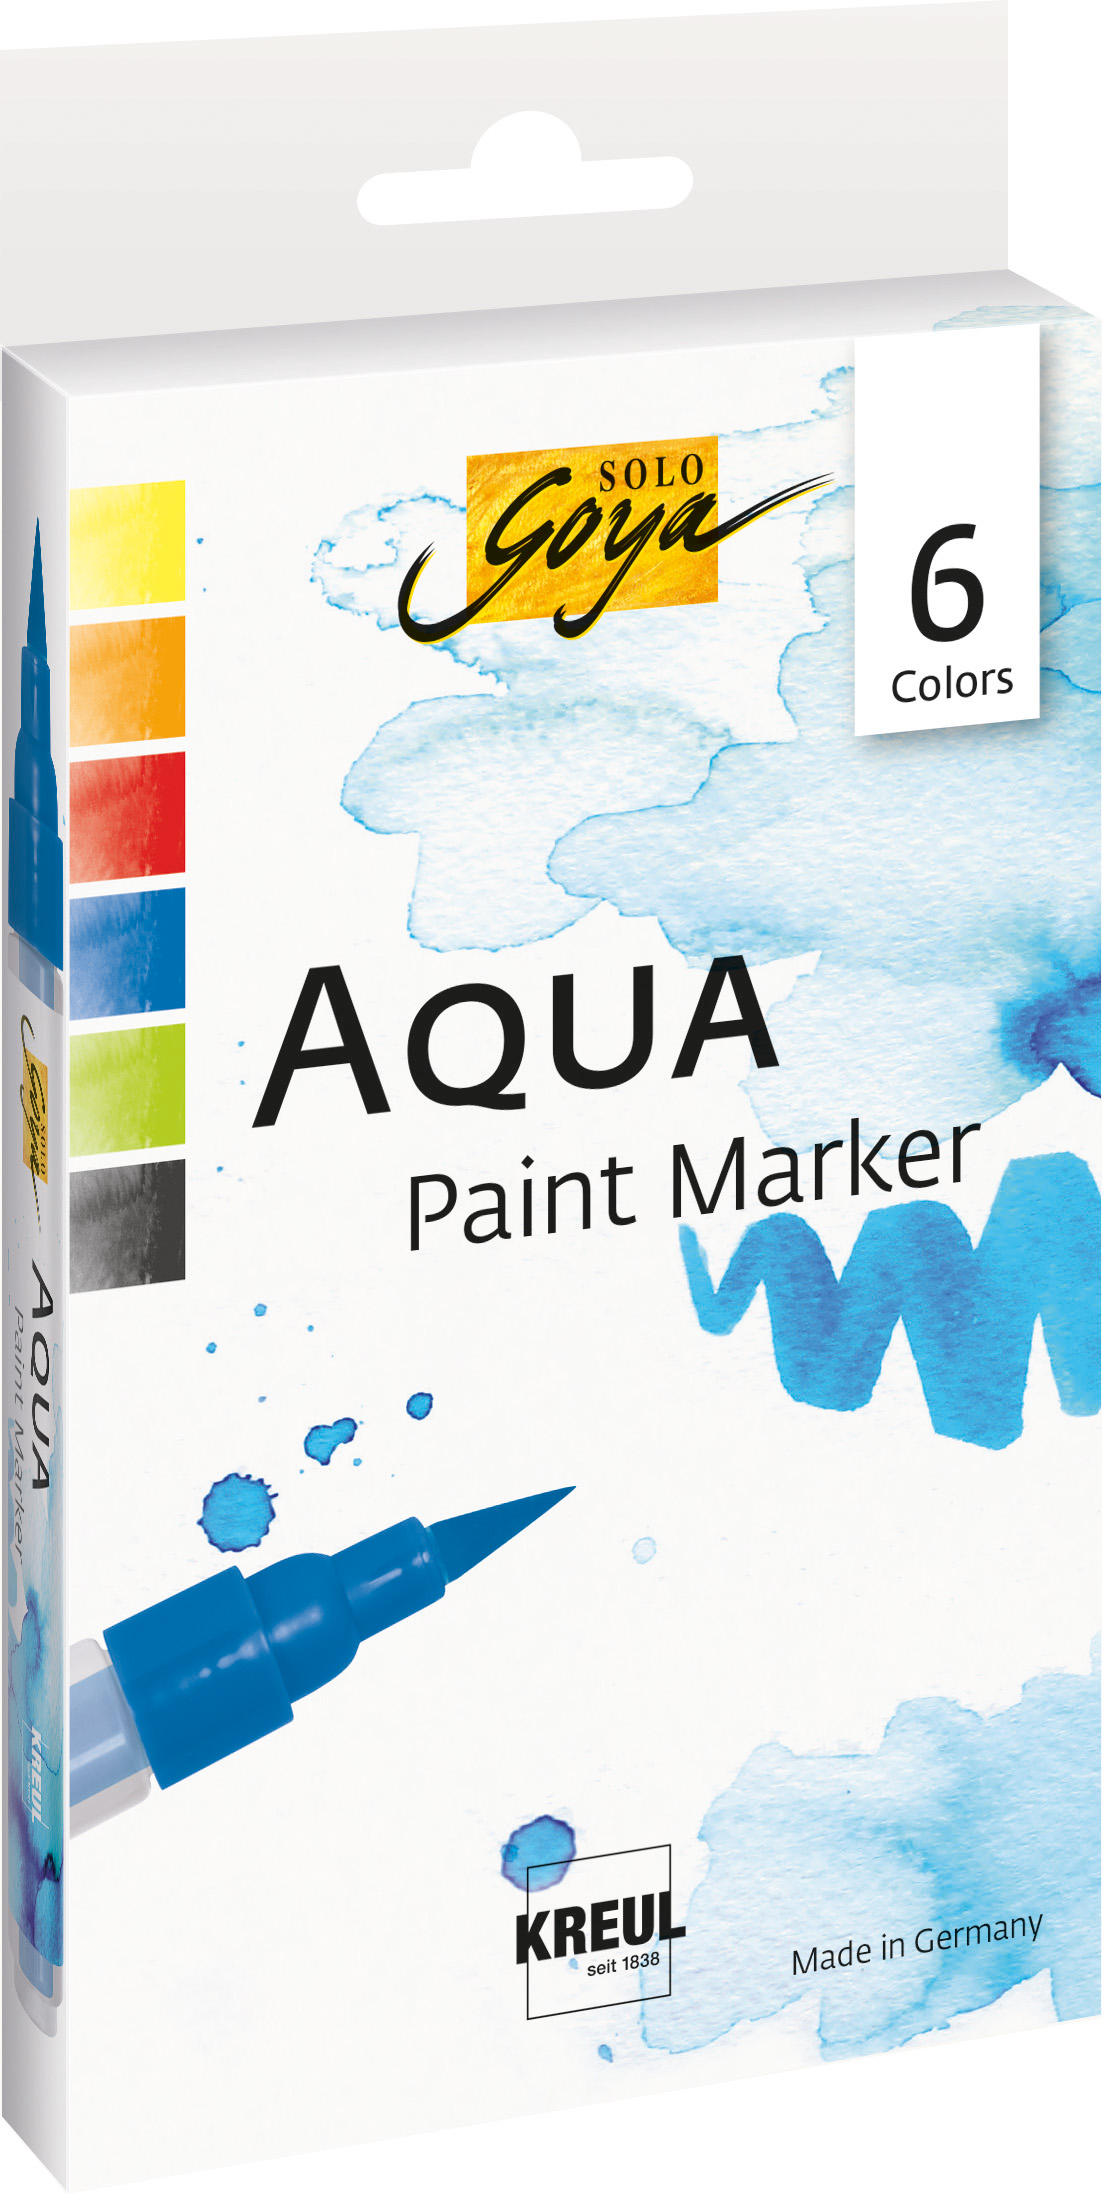 KREUL Solo Goya Aqua Paint Marker 6er Set Nettopreis